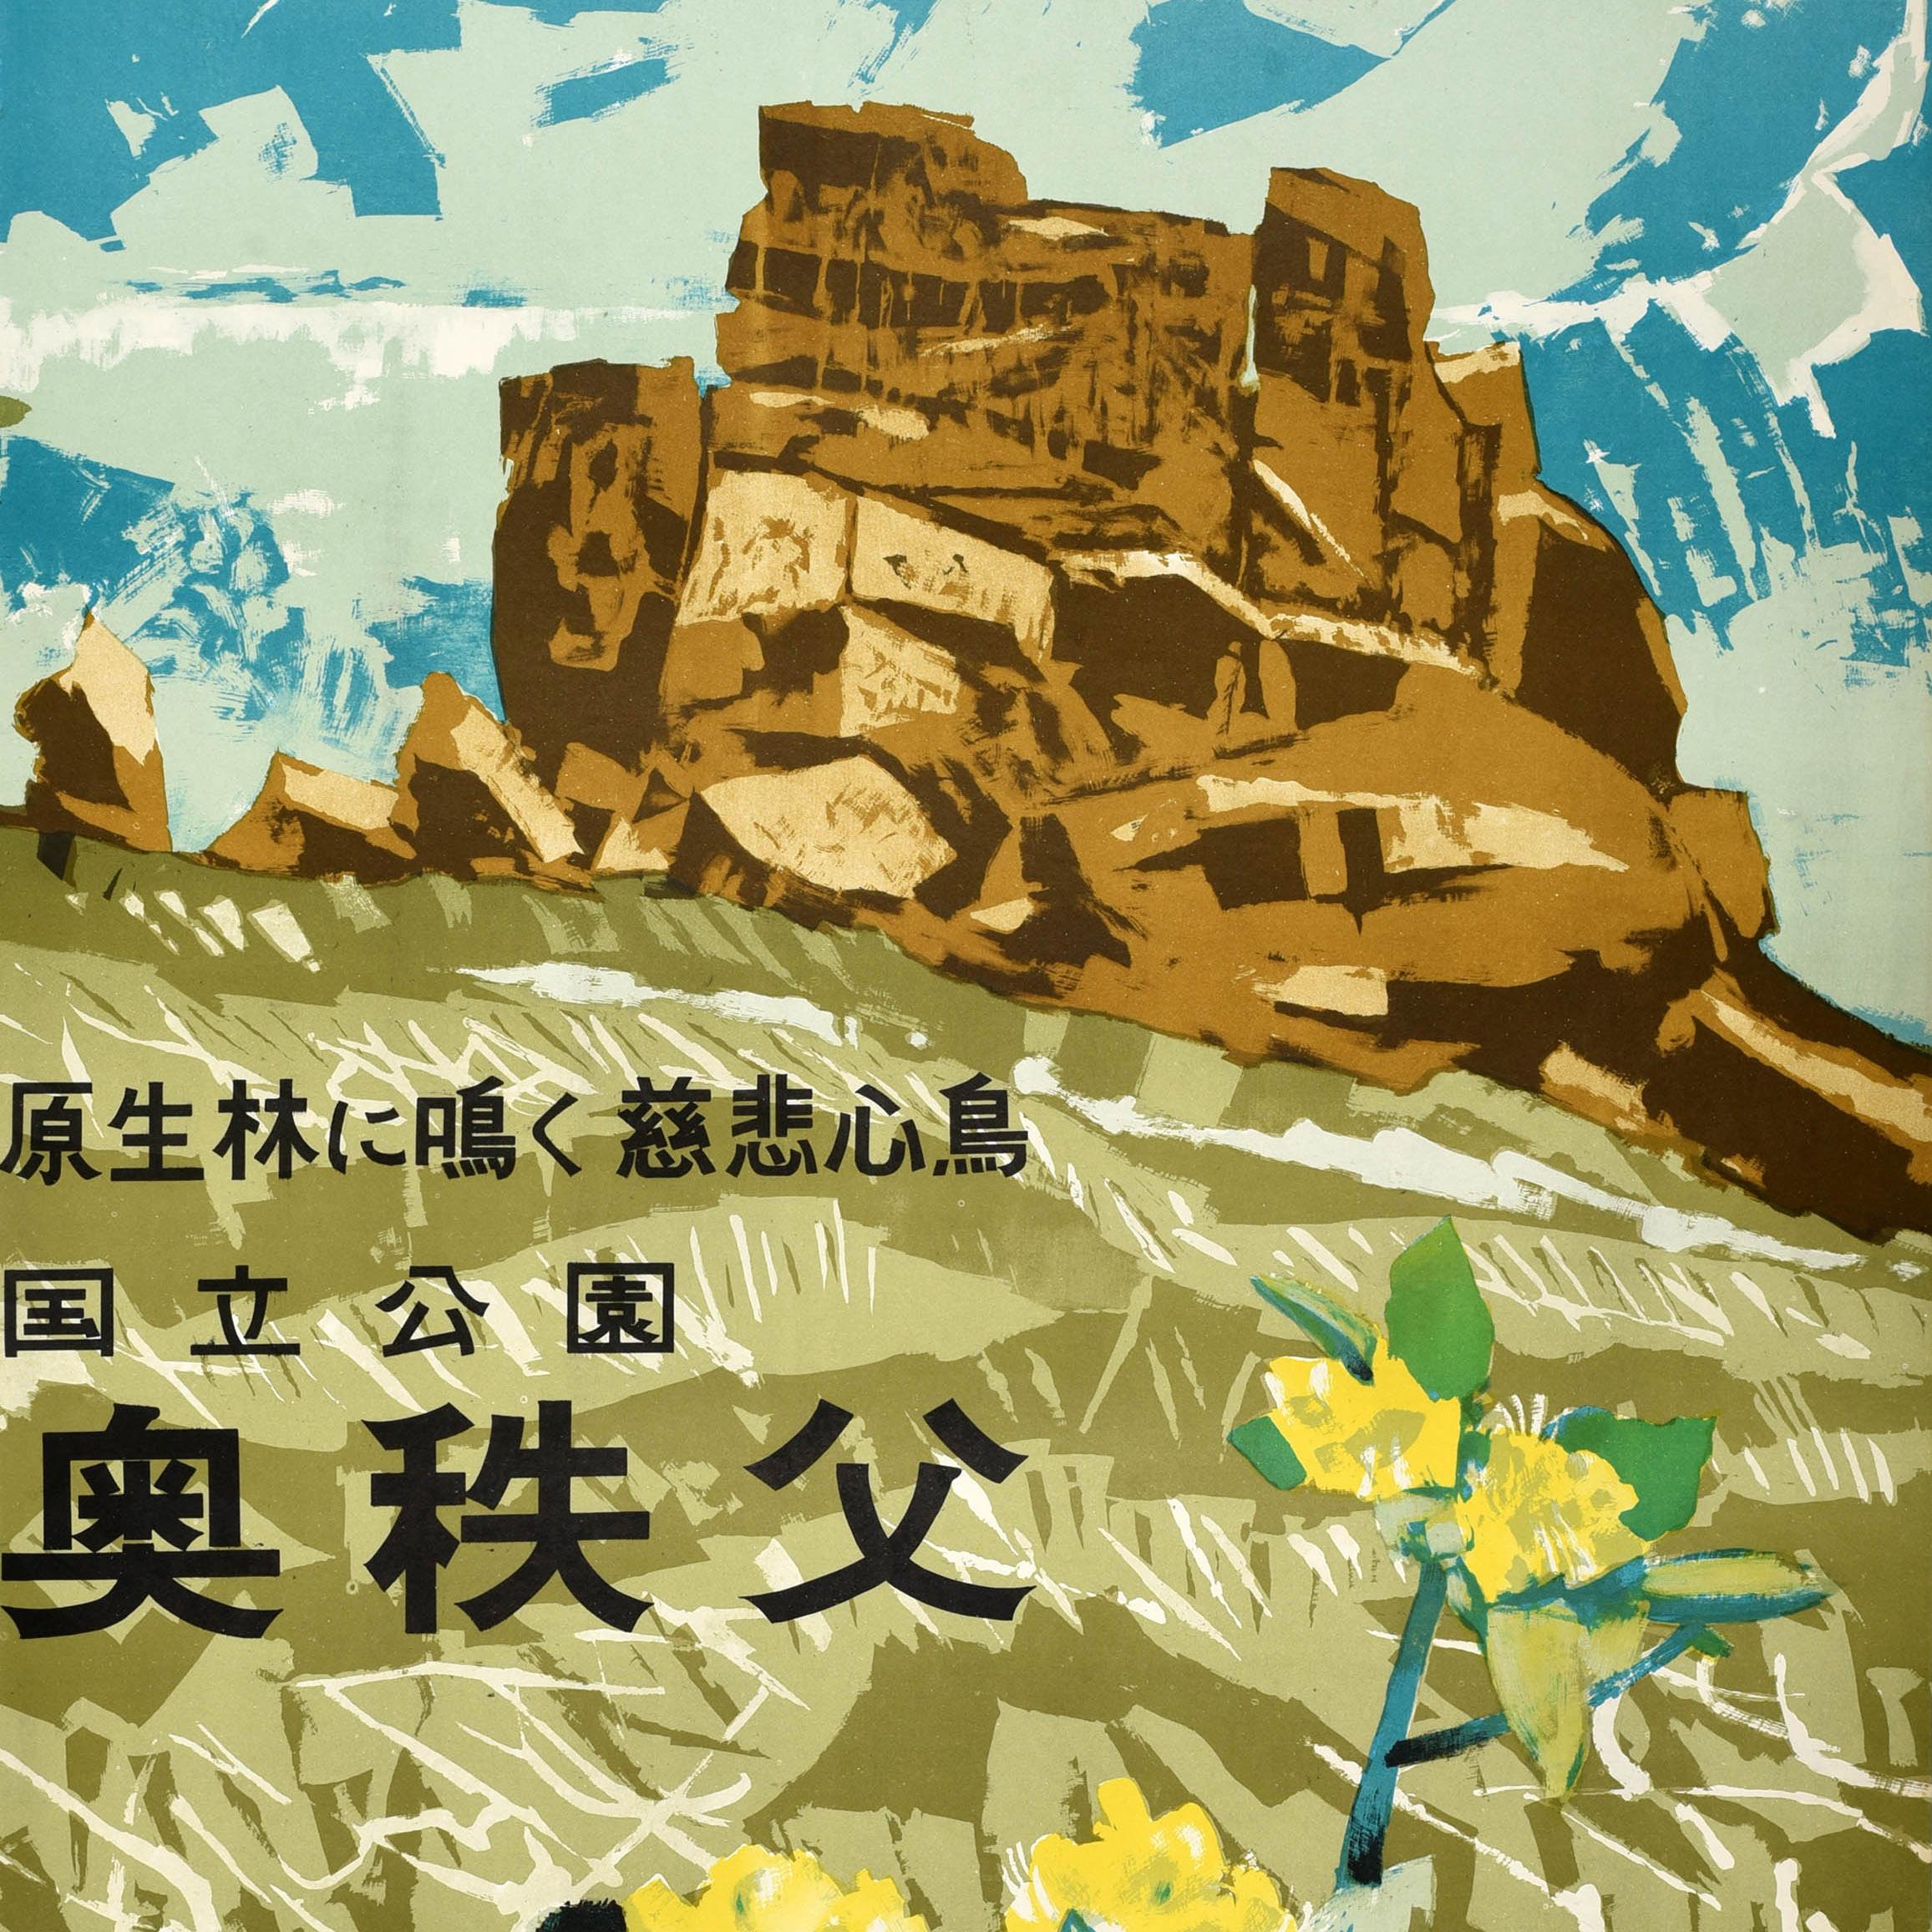 Original Vintage-Reiseplakat für den Chichibu Tama Kai National Park in Japan, herausgegeben vom Saitama Prefecture Chichibu Tourism Council, mit gelben Blumen und einem Feld aus grünem Gras, das zu einer dramatischen Felsformation vor dem